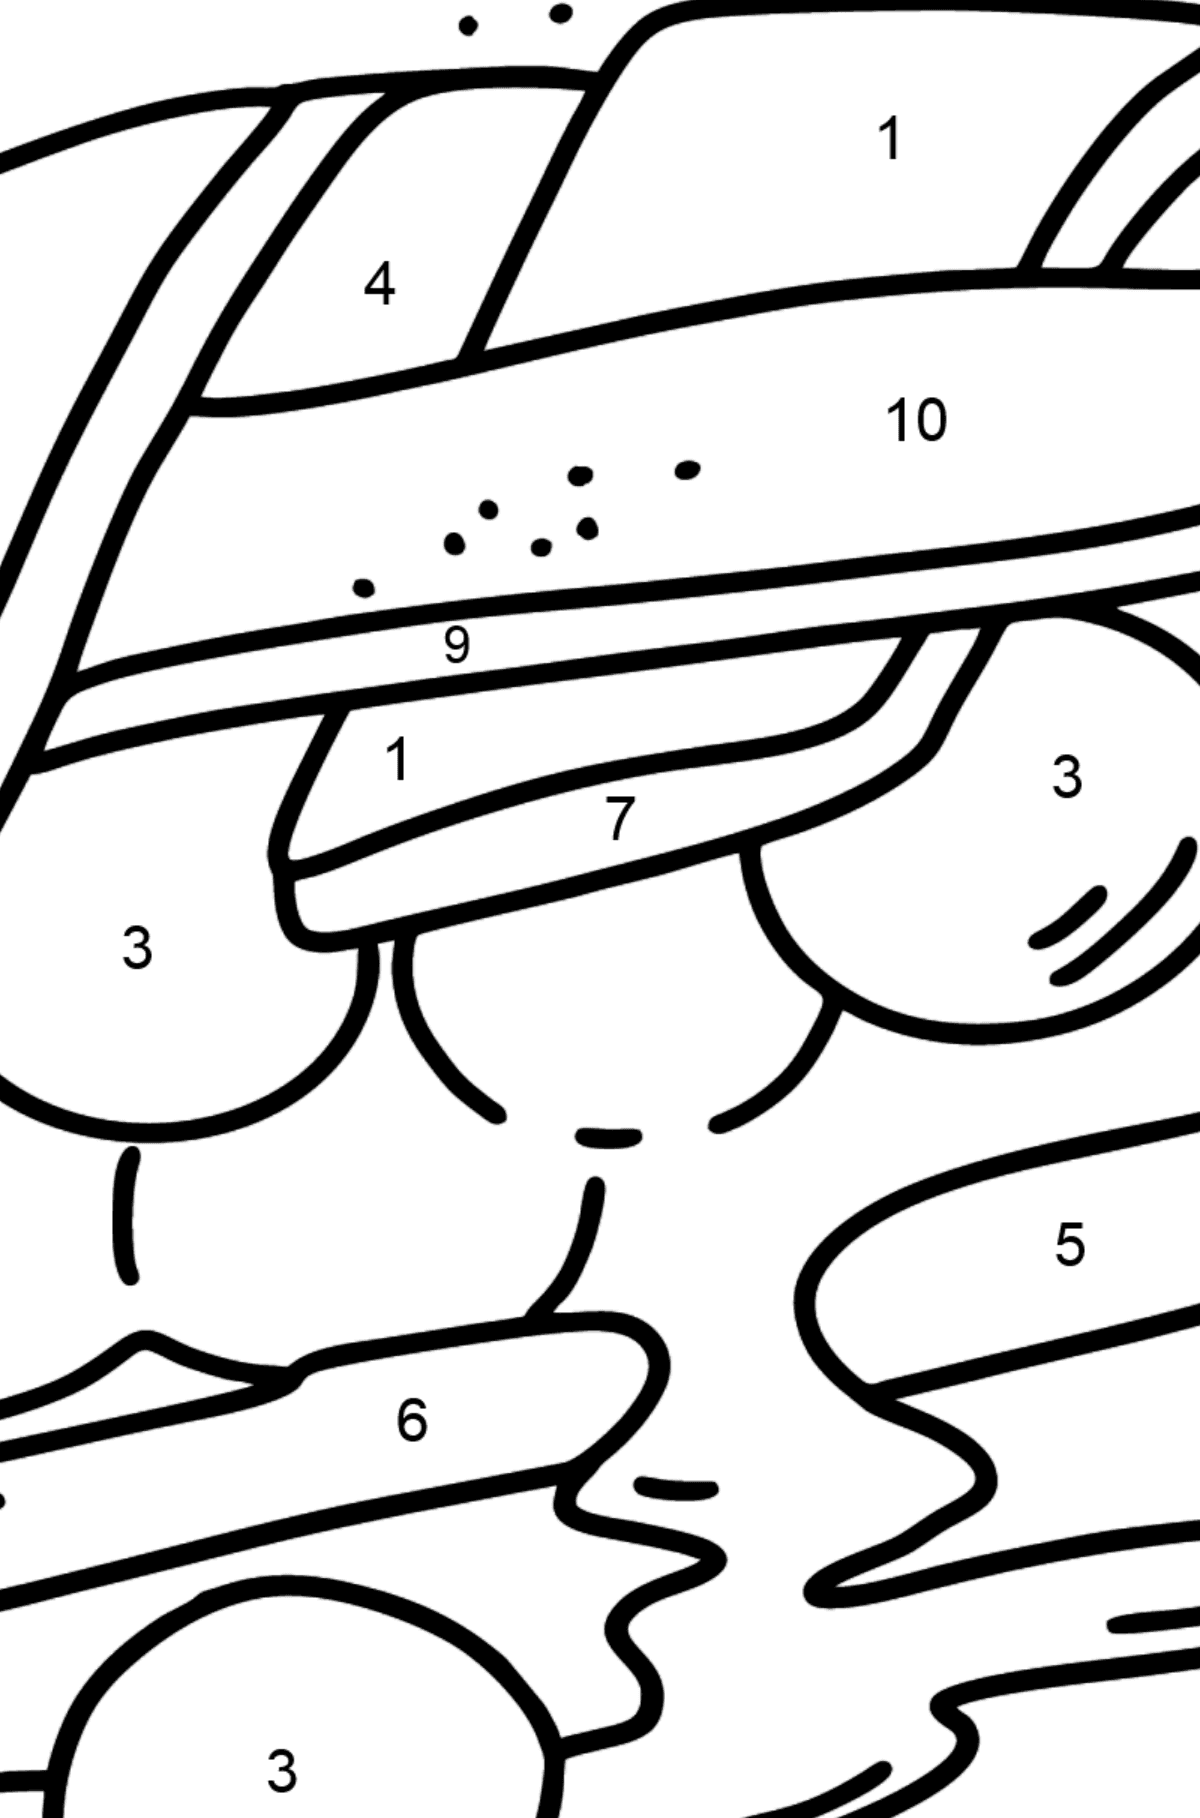 Ausmalbild: Beerenkuchen - Malen nach Zahlen für Kinder